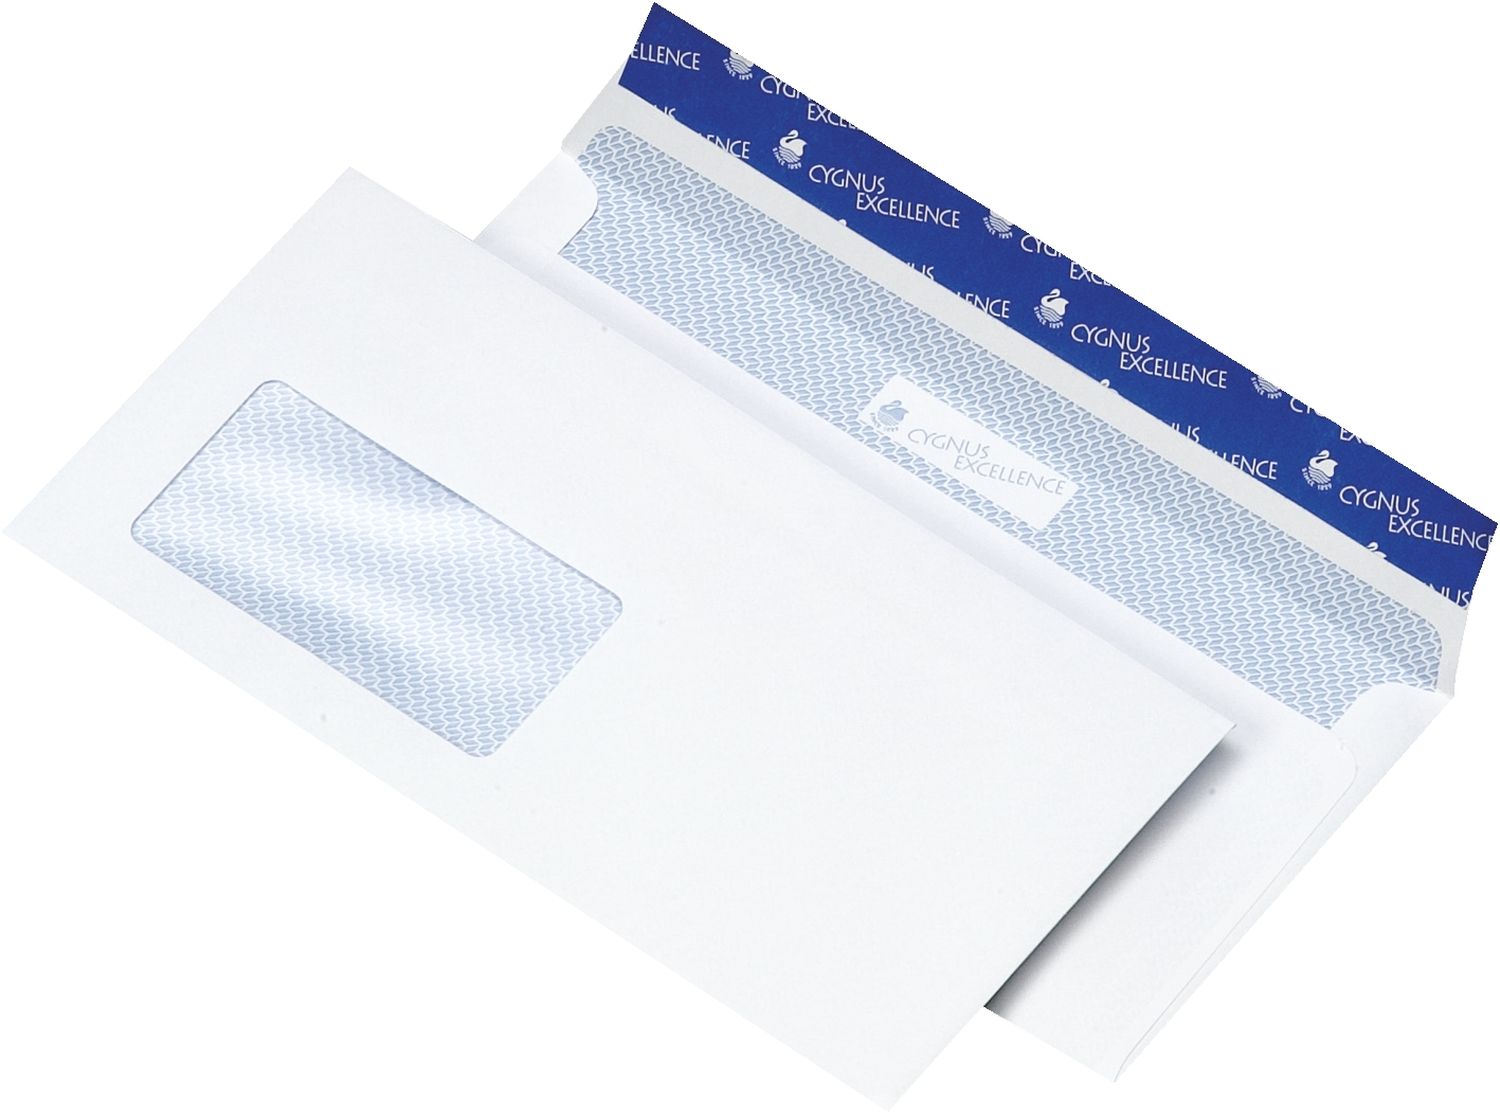 Briefumschlag Cygnus Excellence 30007246, DIN lang (220x110 mm), haftkebend, weiß, Offset 100g, 500 Stück mit Fenster